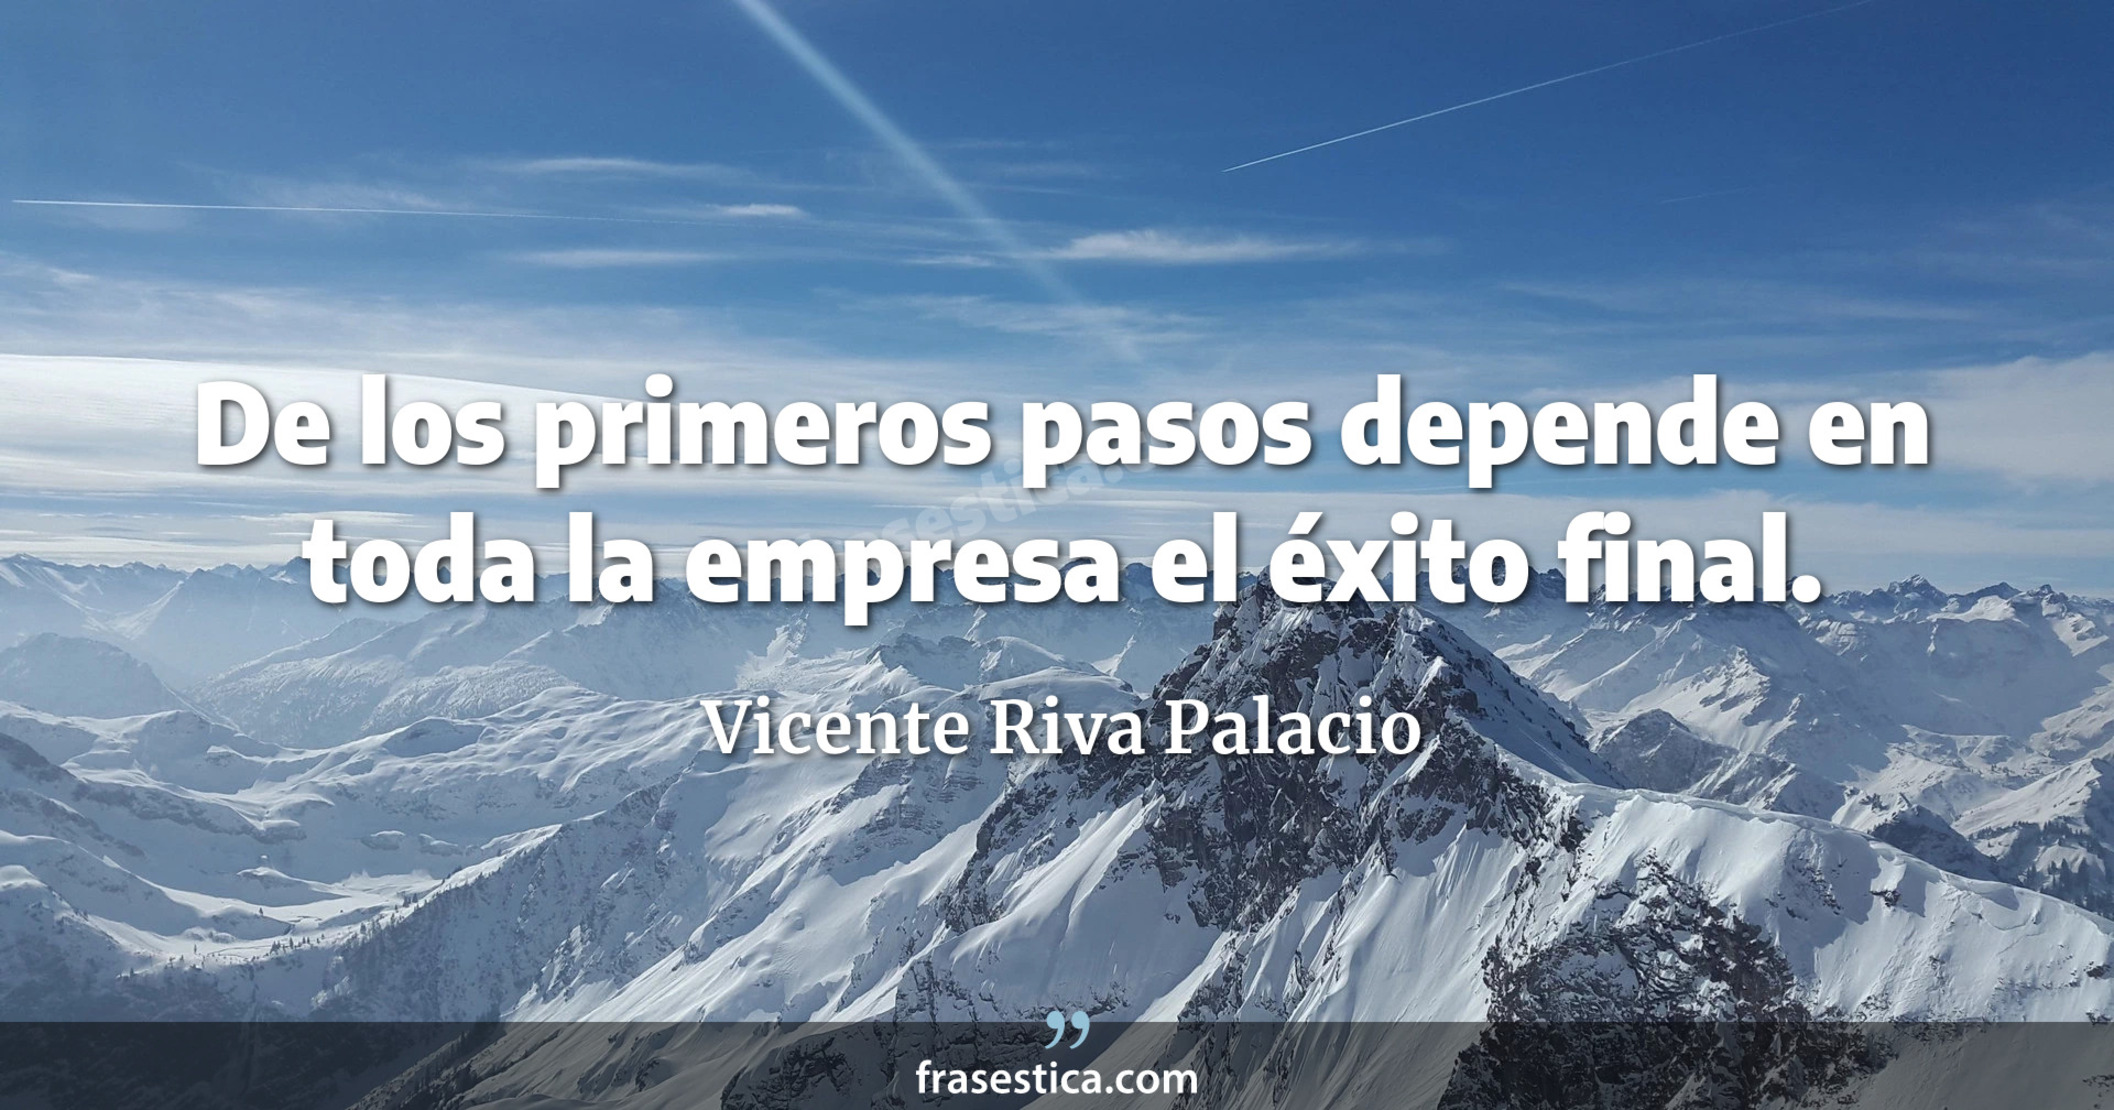 De los primeros pasos depende en toda la empresa el éxito final. - Vicente Riva Palacio